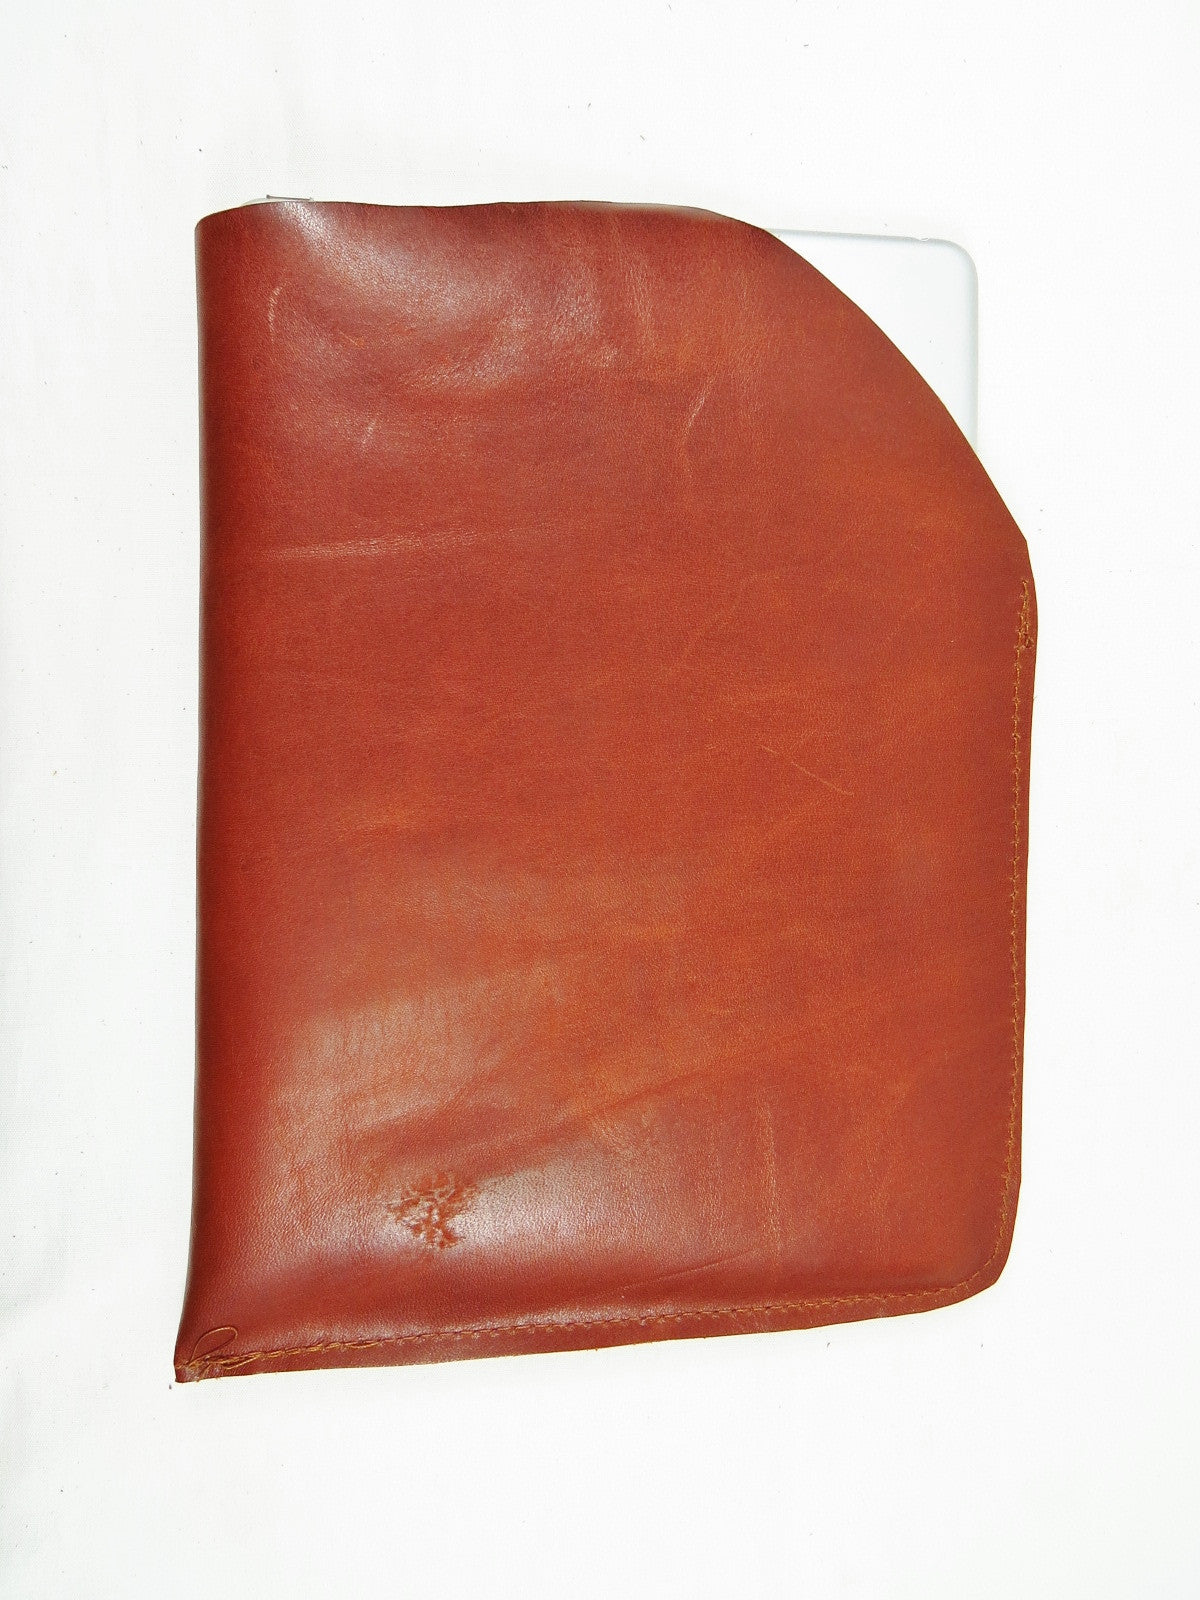 Leather iPad Sleeve